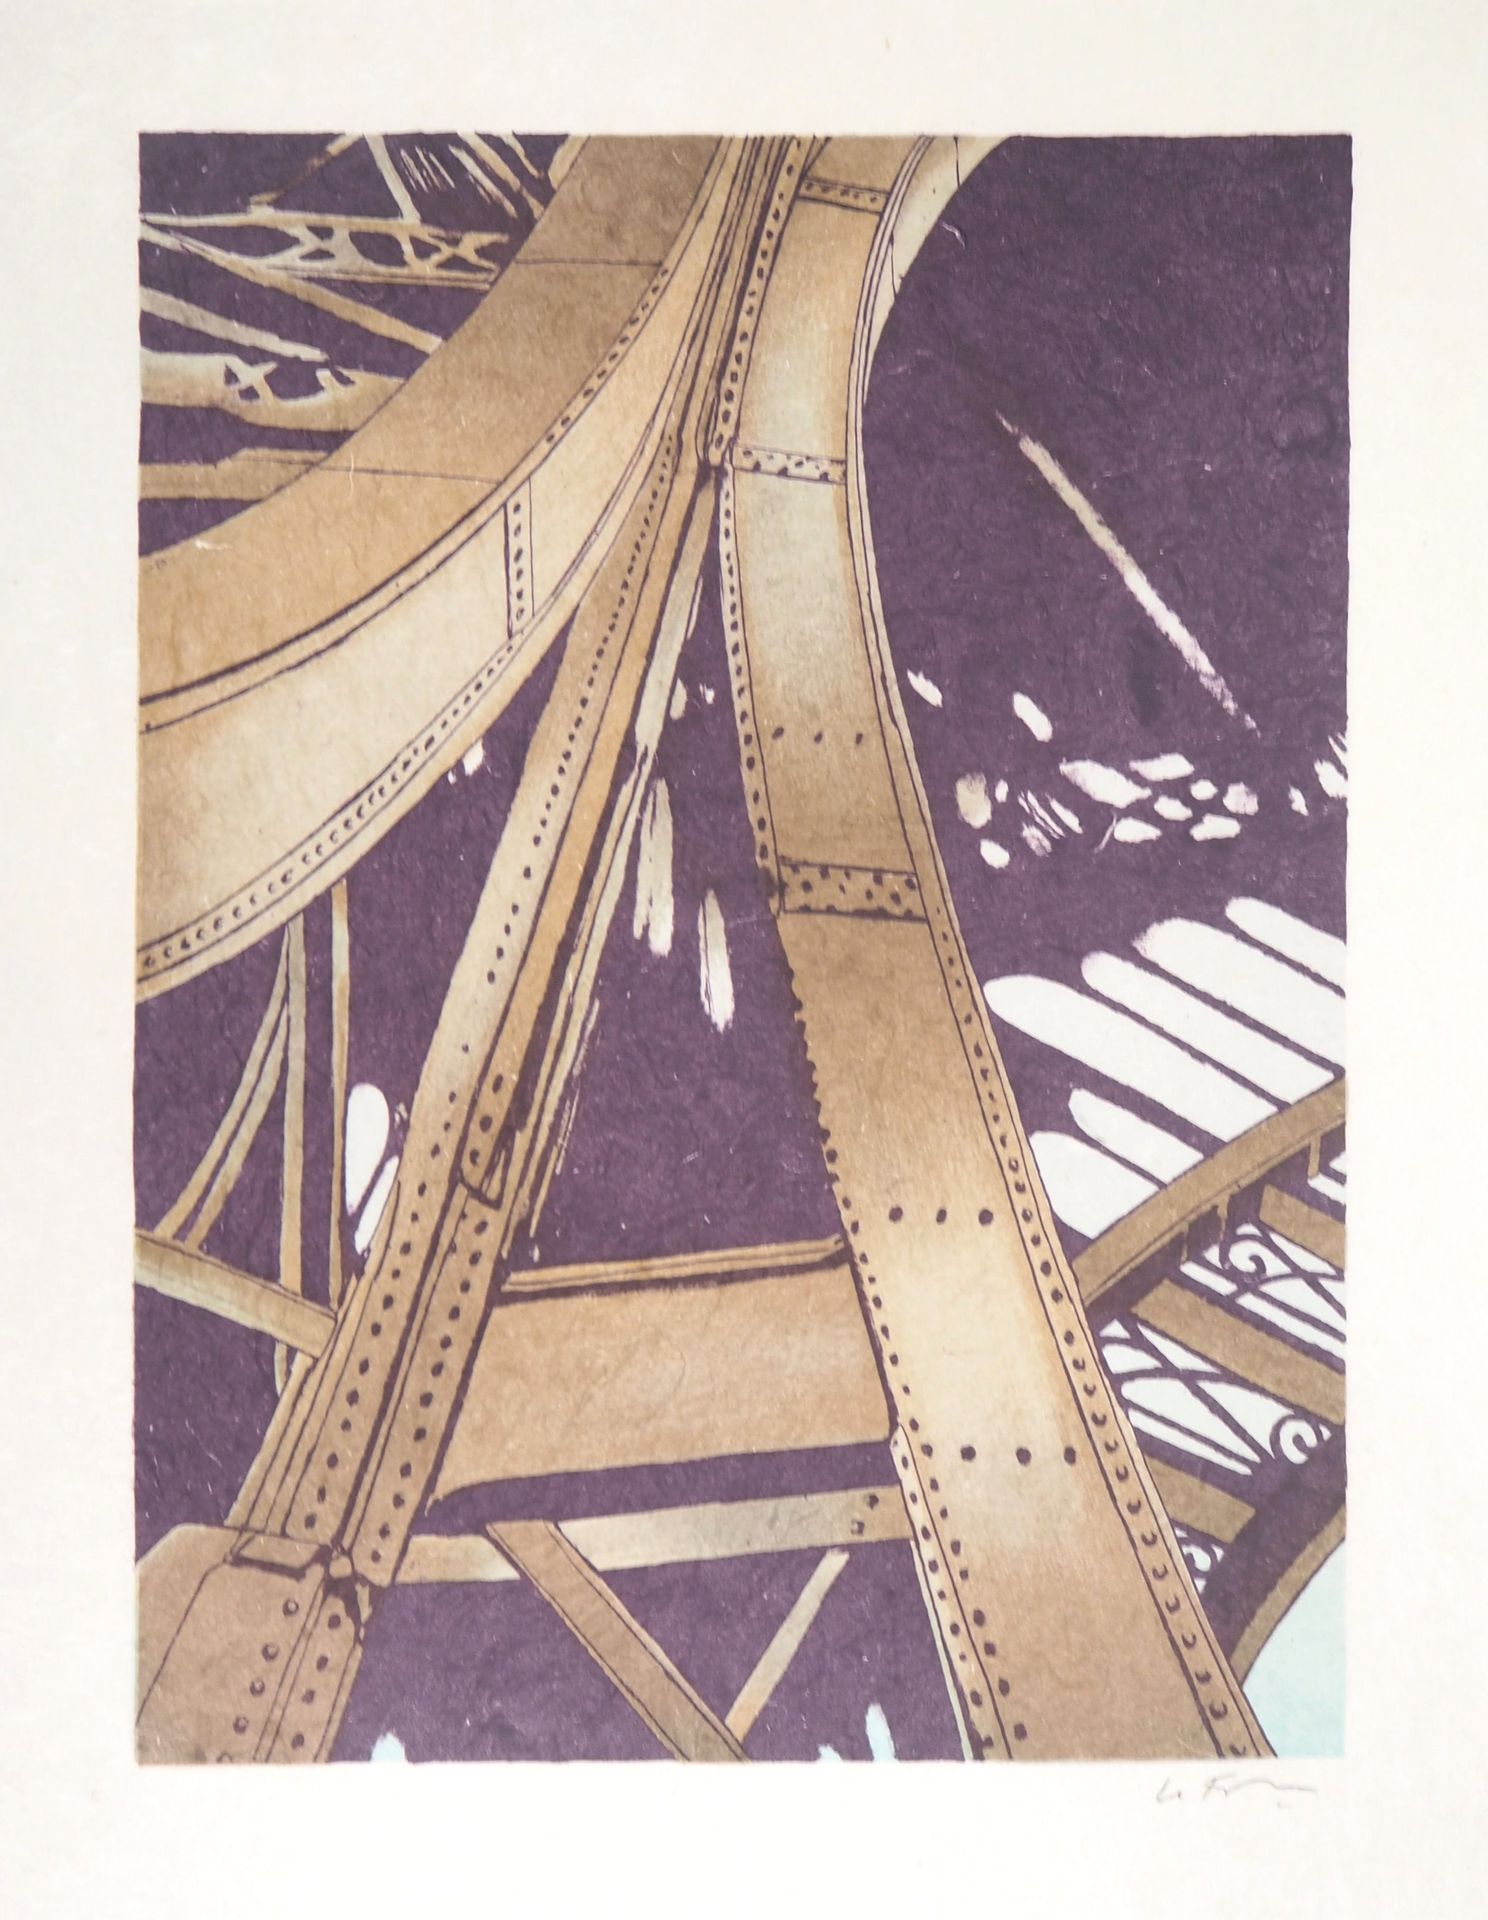 Alain le Foll Alain LE FOLL

埃菲尔铁塔：建筑的宏伟性

原始石版画

用铅笔签名

绘于日本纸上，40,5 x 31,5 cm

&hellip;